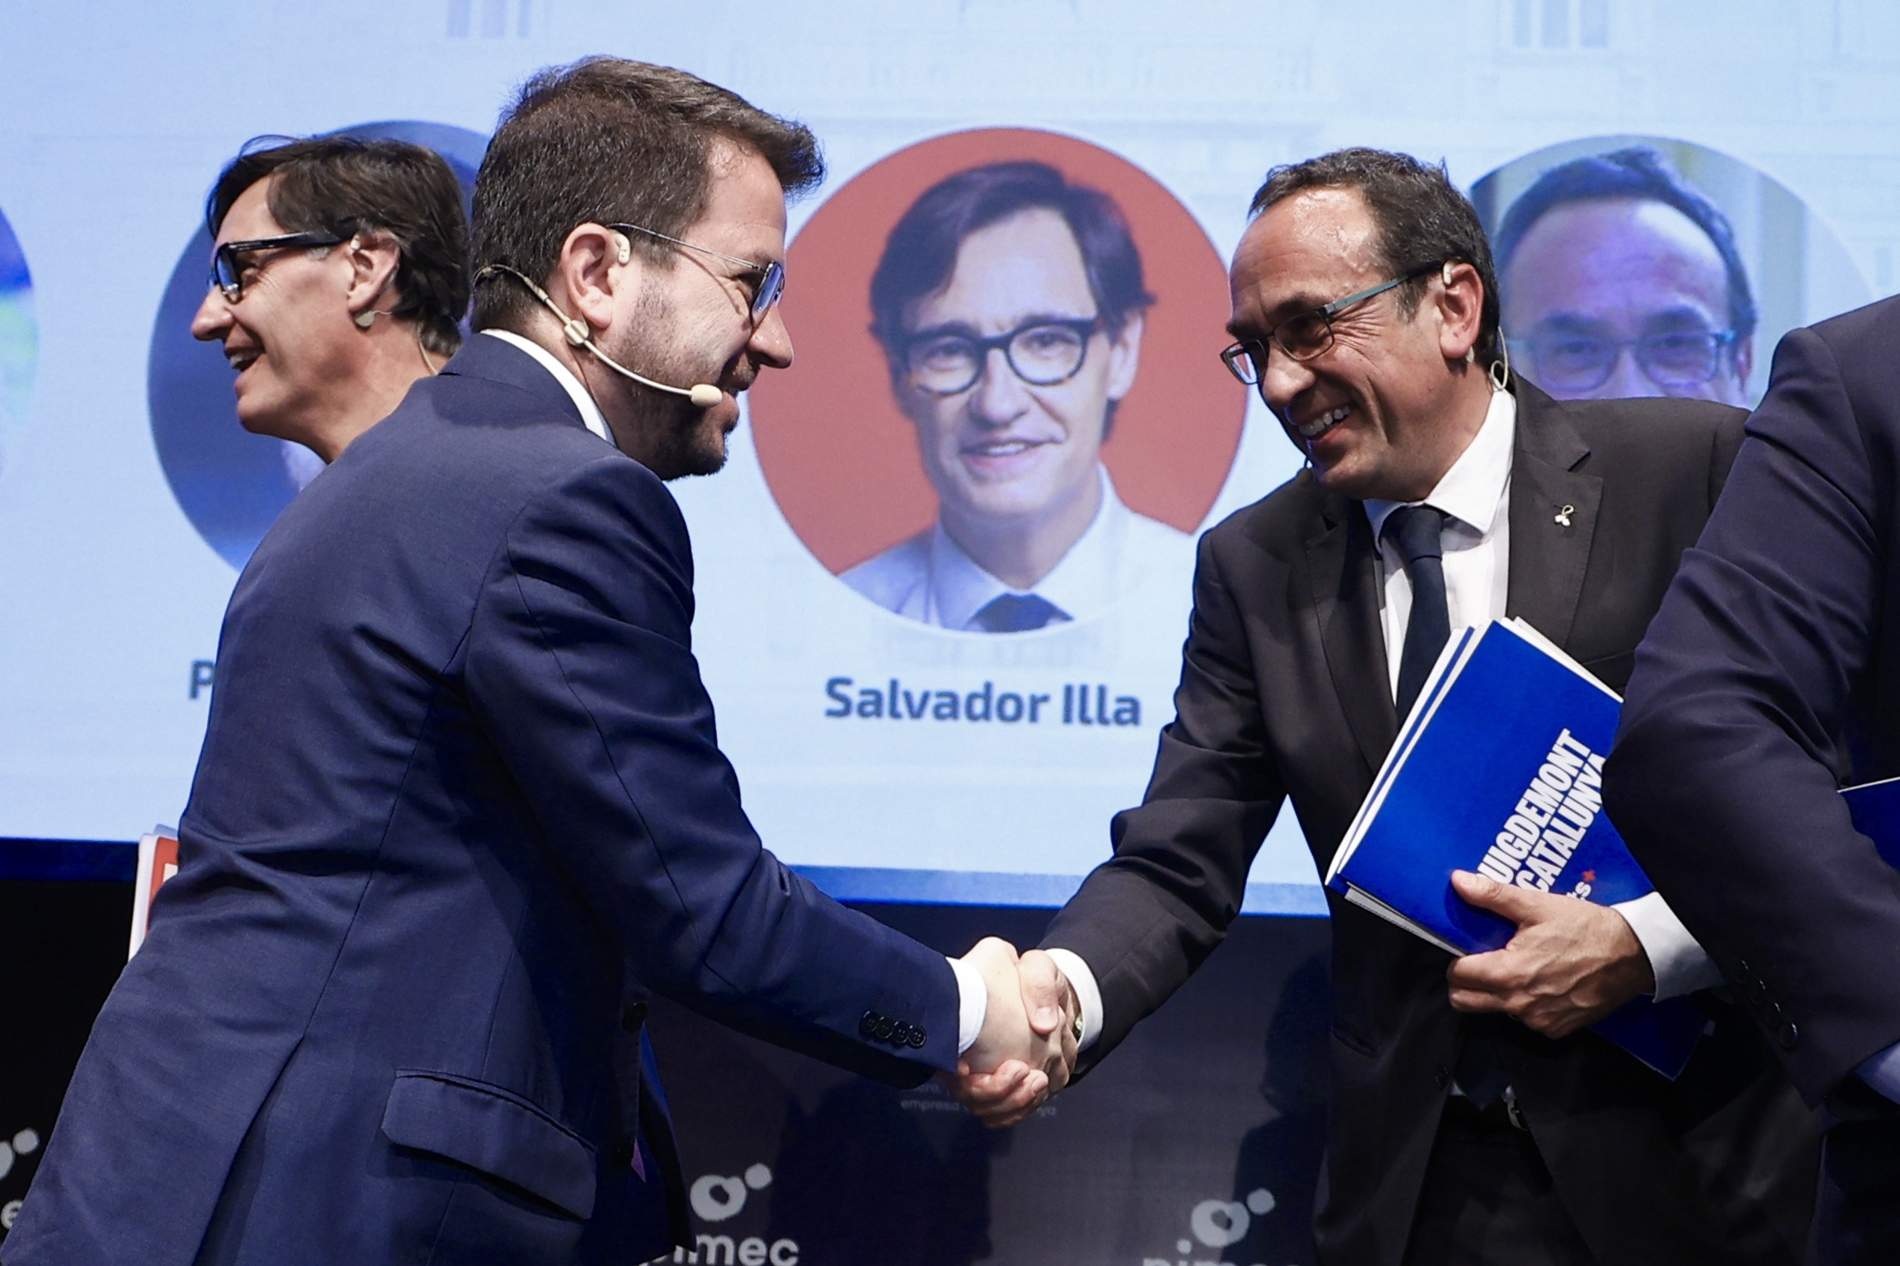 Aragonès retreu l'absència de Puigdemont en un debat i Rull es regira: "Hauria de ser sensible"